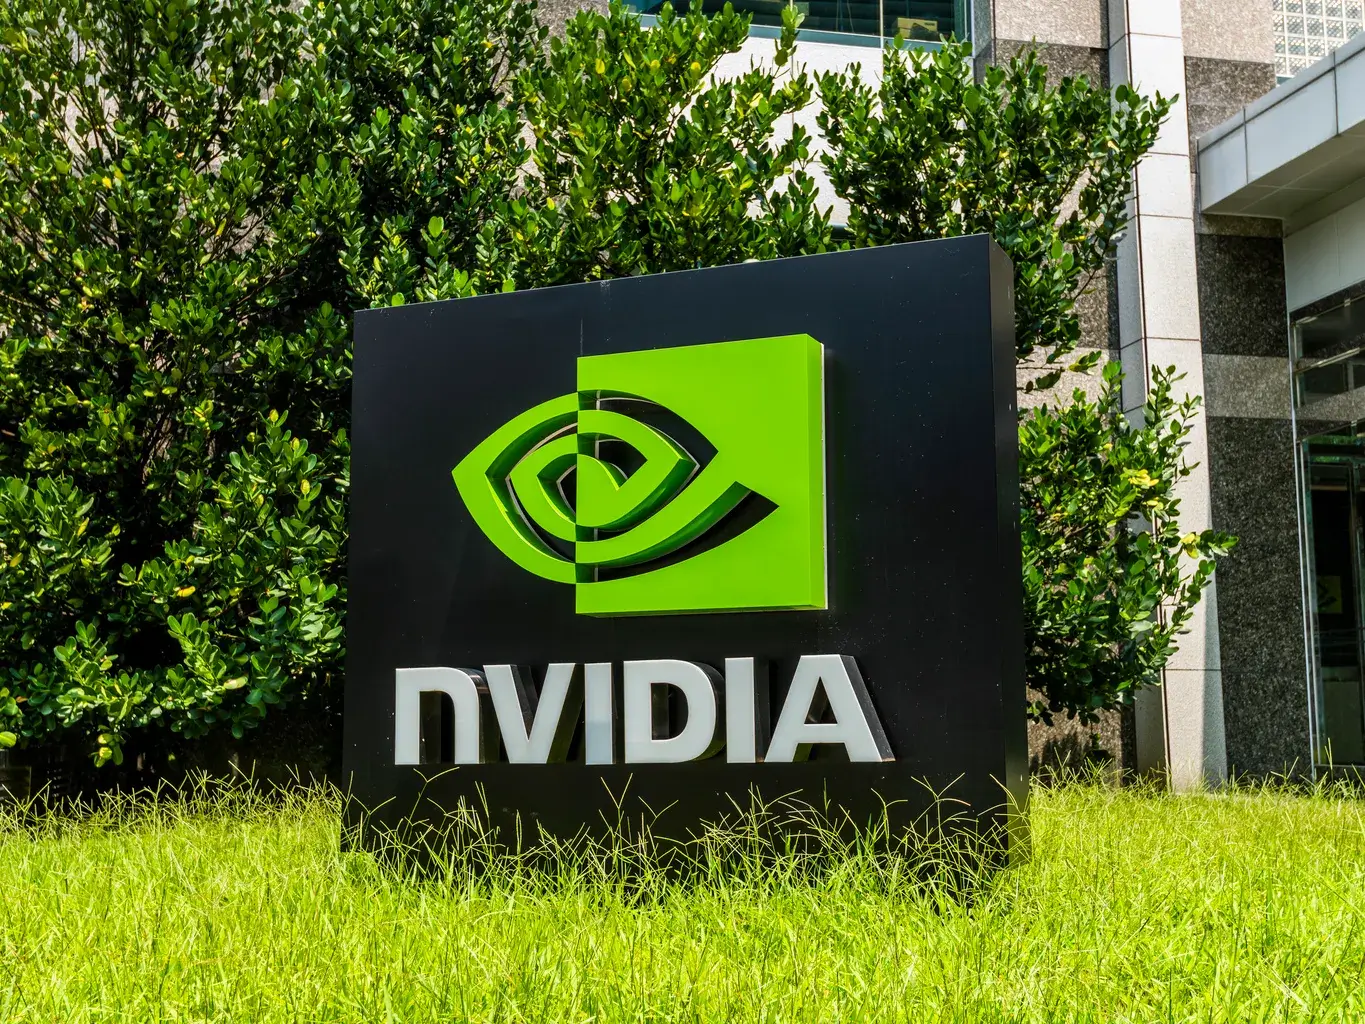 “Nvidia”nın bazar dəyəri 1 trilyon dollara yaxınlaşıb